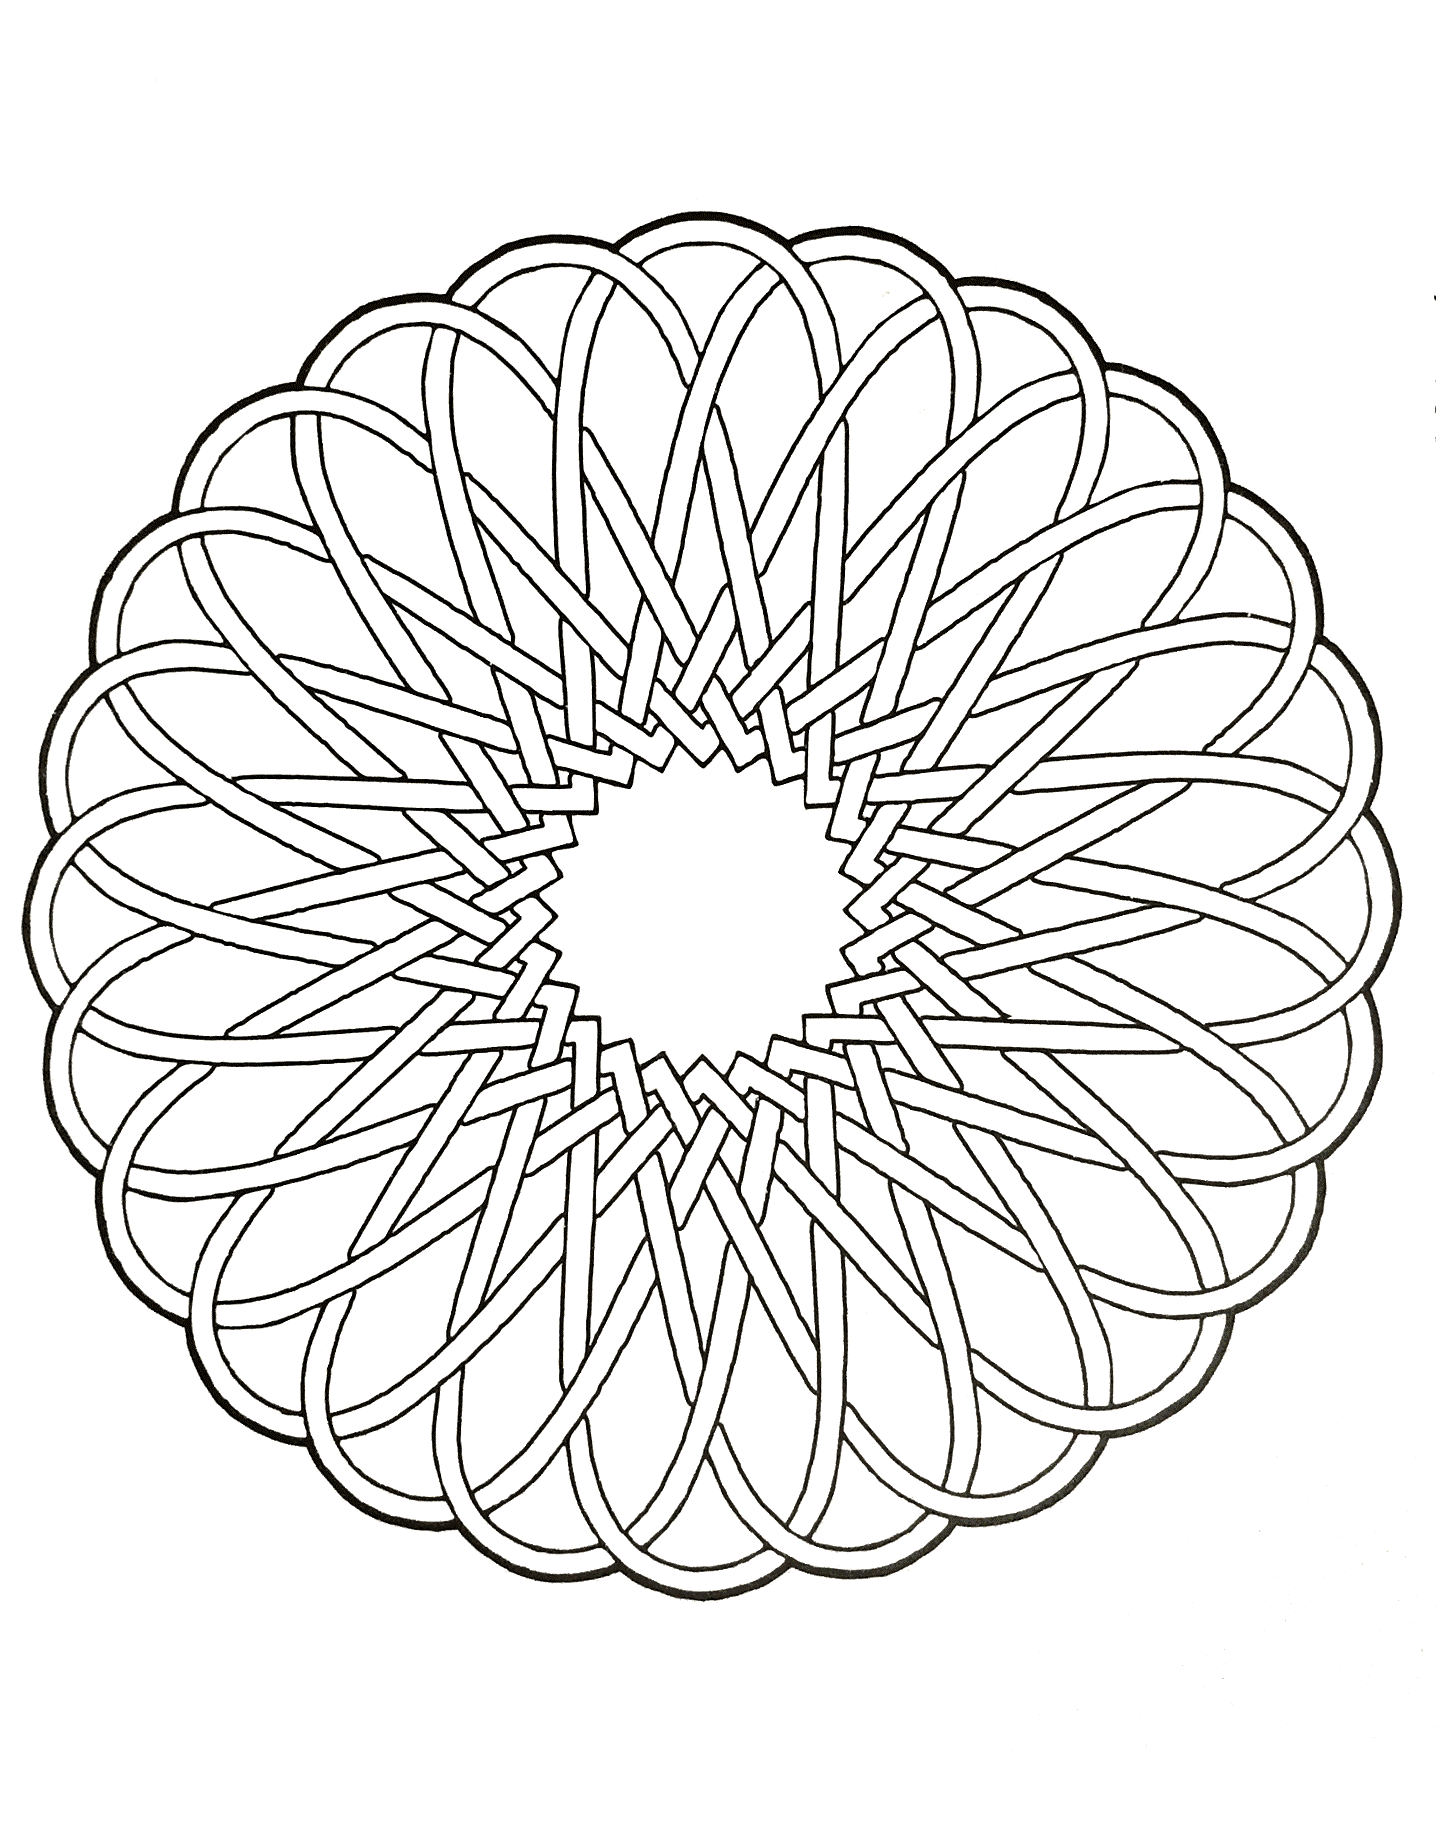 Un Mandala assez difficile à colorier, parfait si vous aimez mettre en couleur de petites zones, et si vous aimez les détails variés.